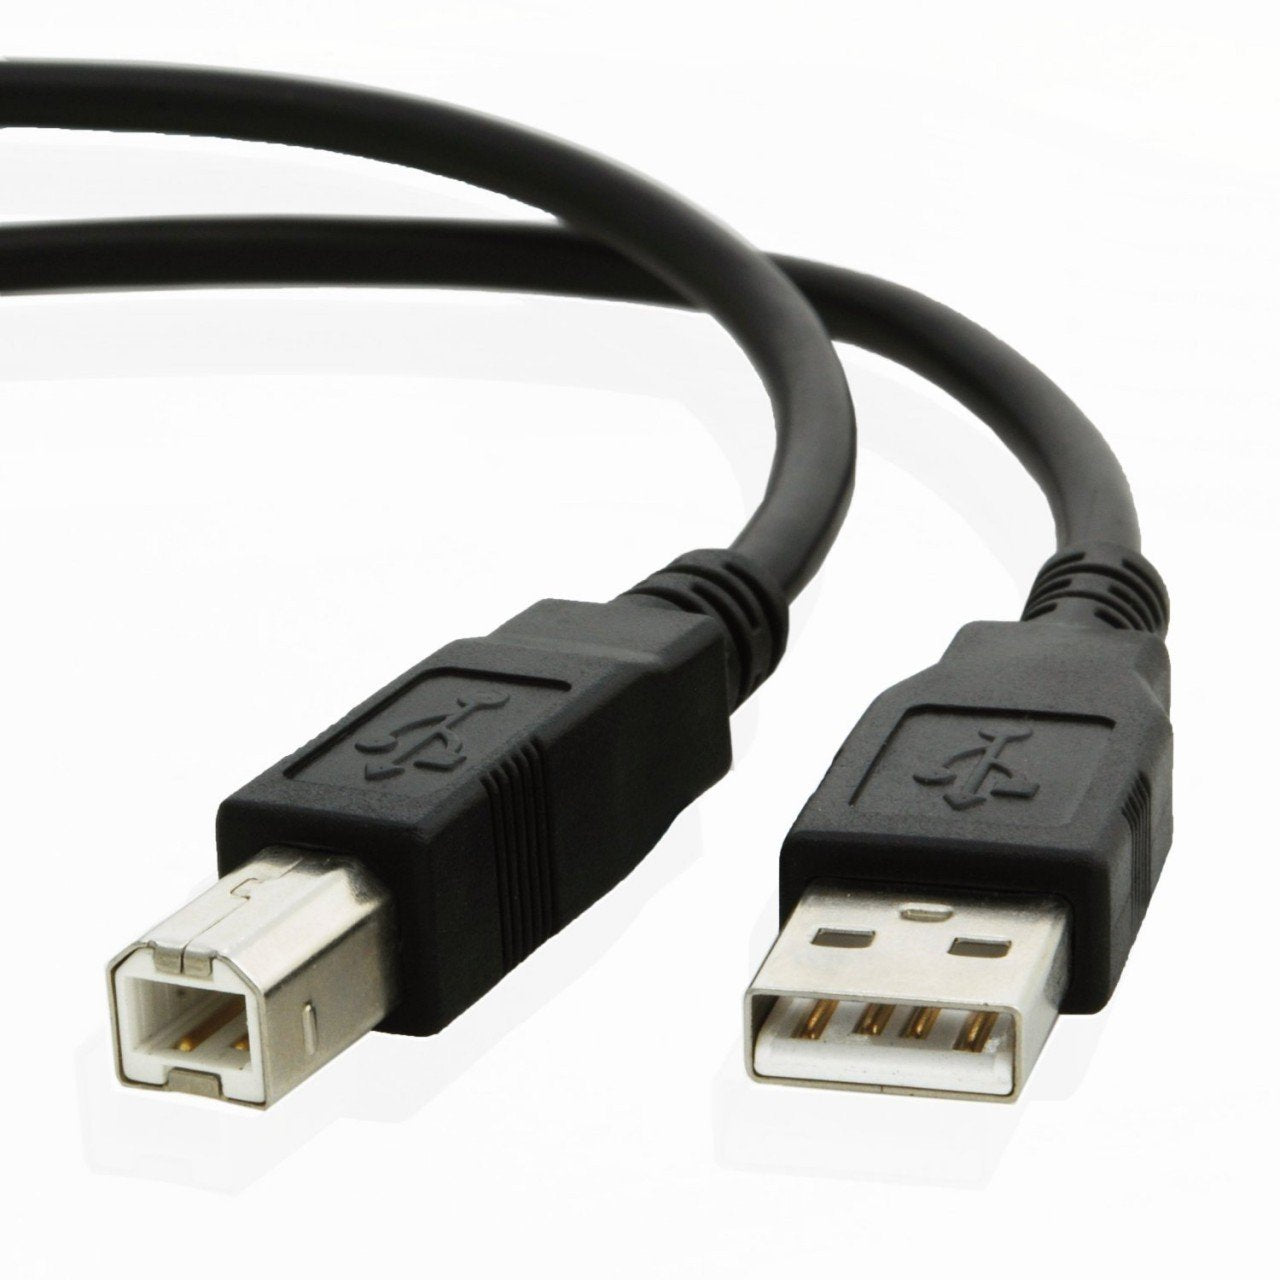 USB cable for Fujitsu FI 5530C2